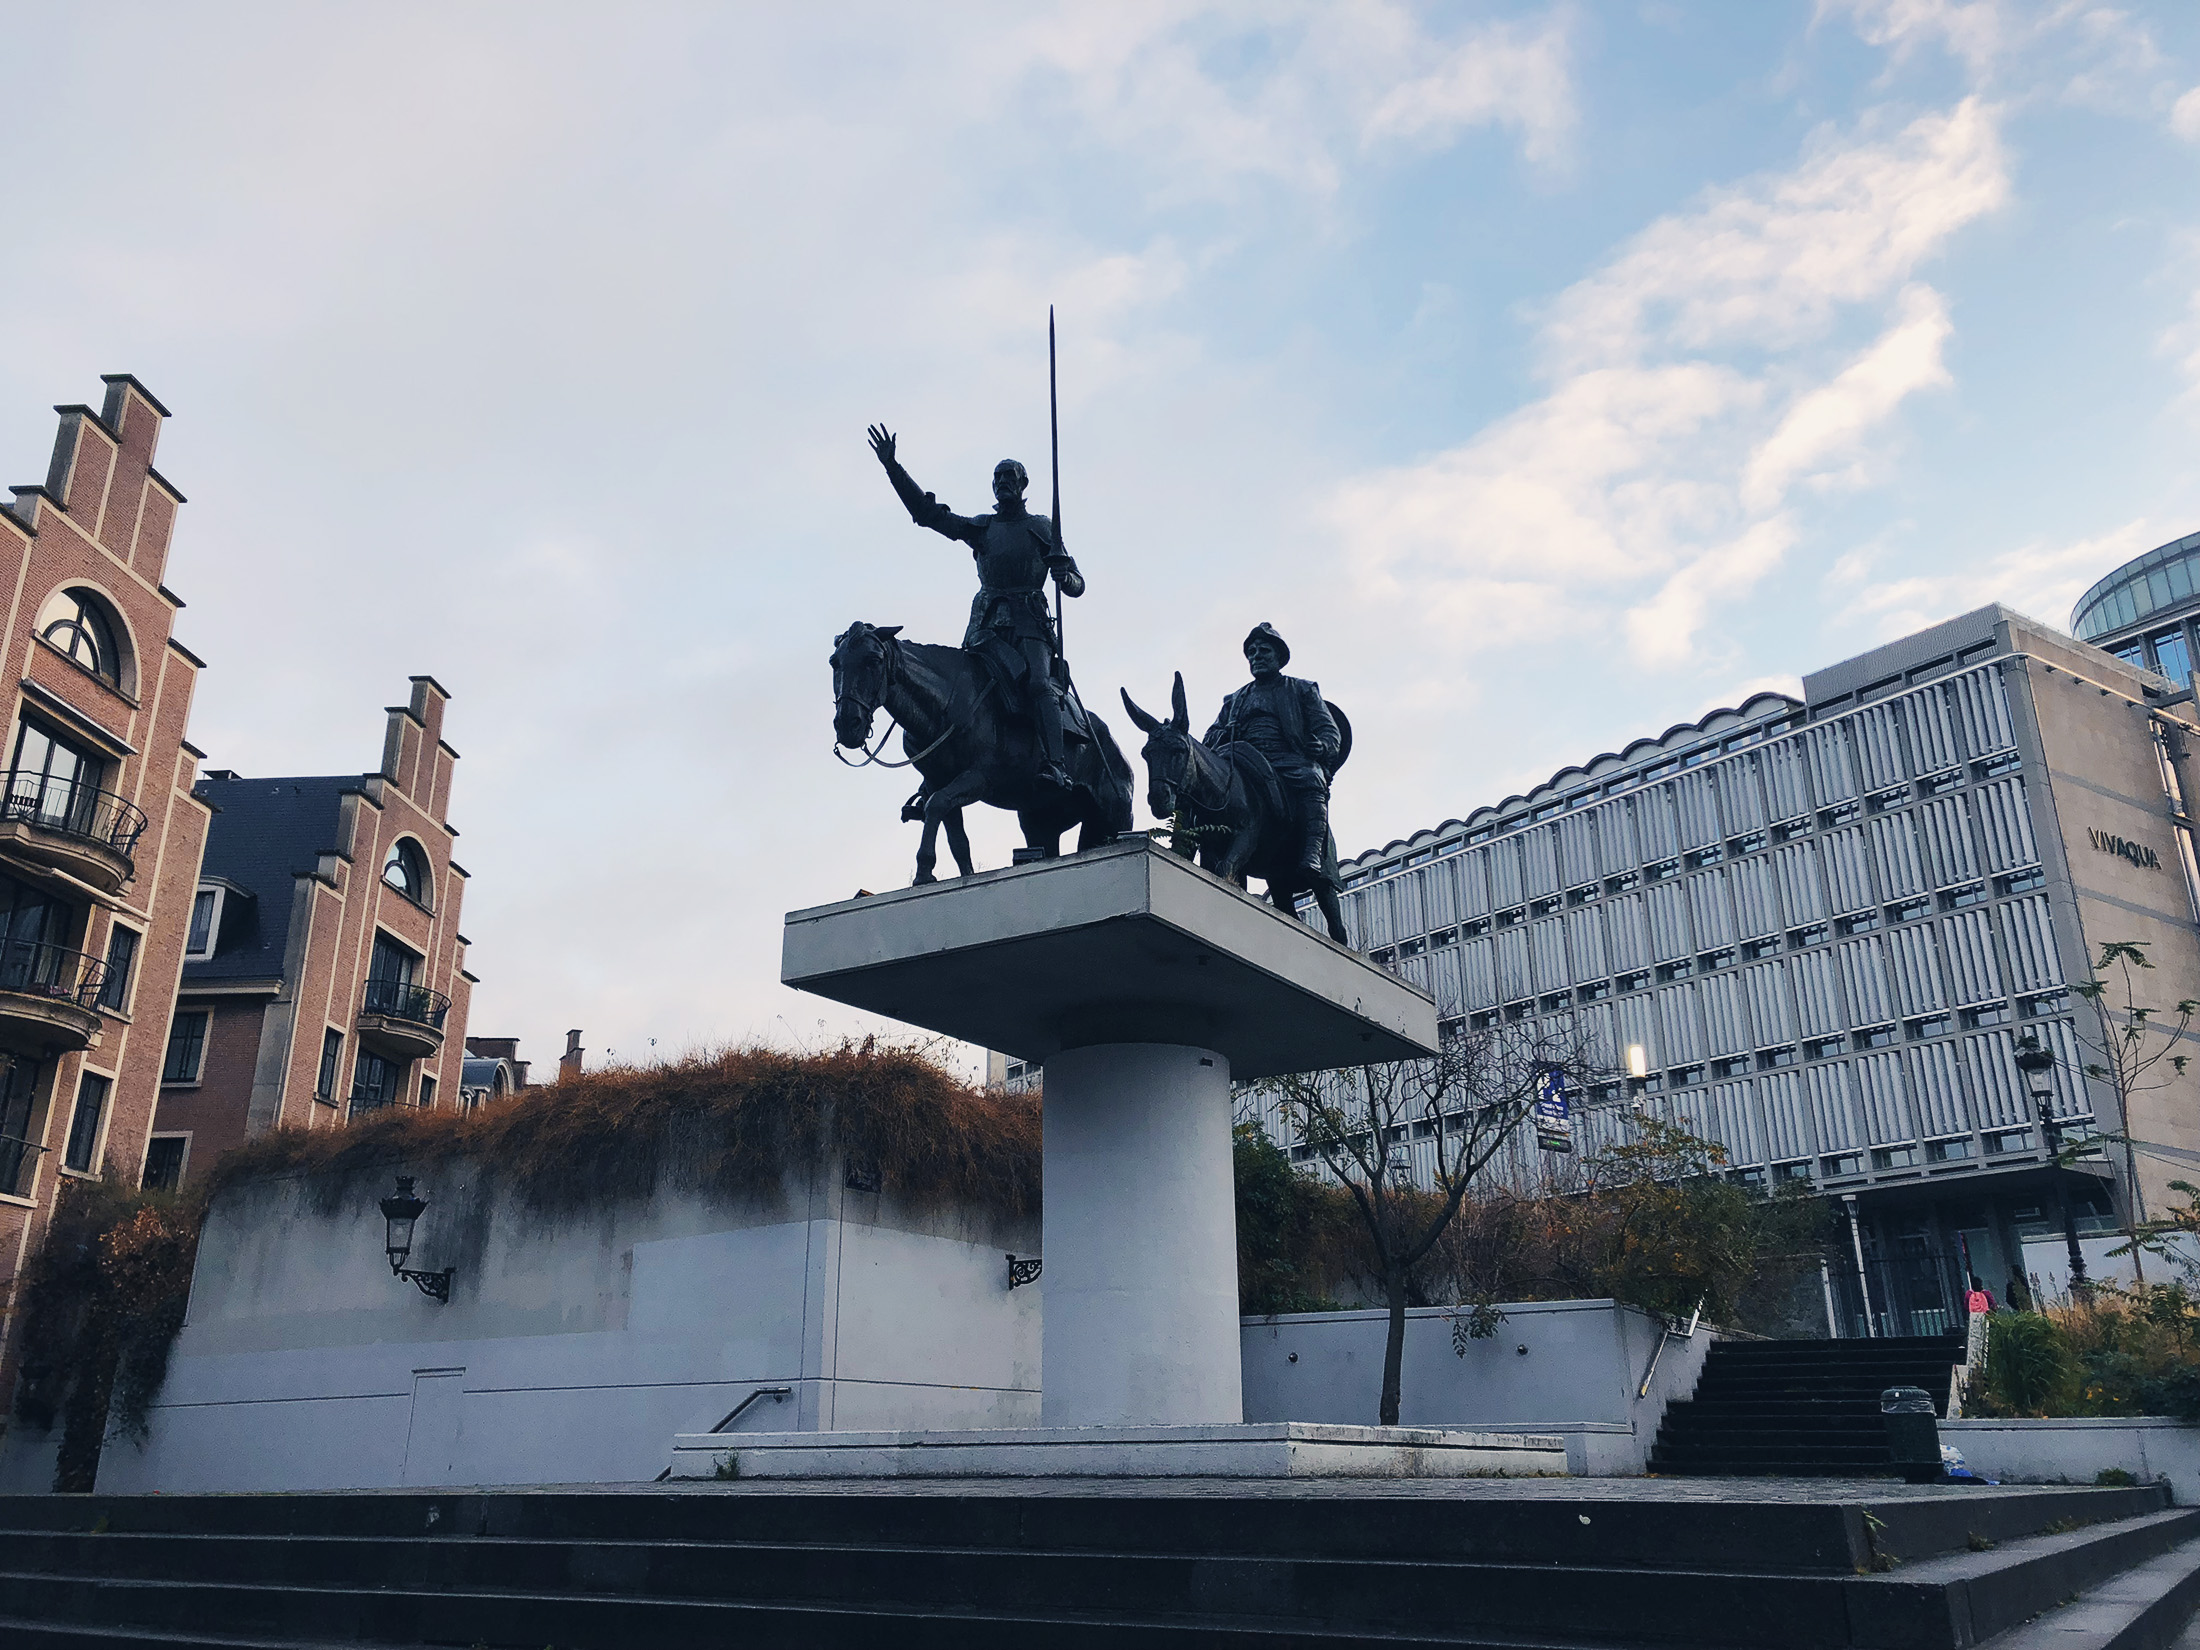 Monument à Don Quichotte